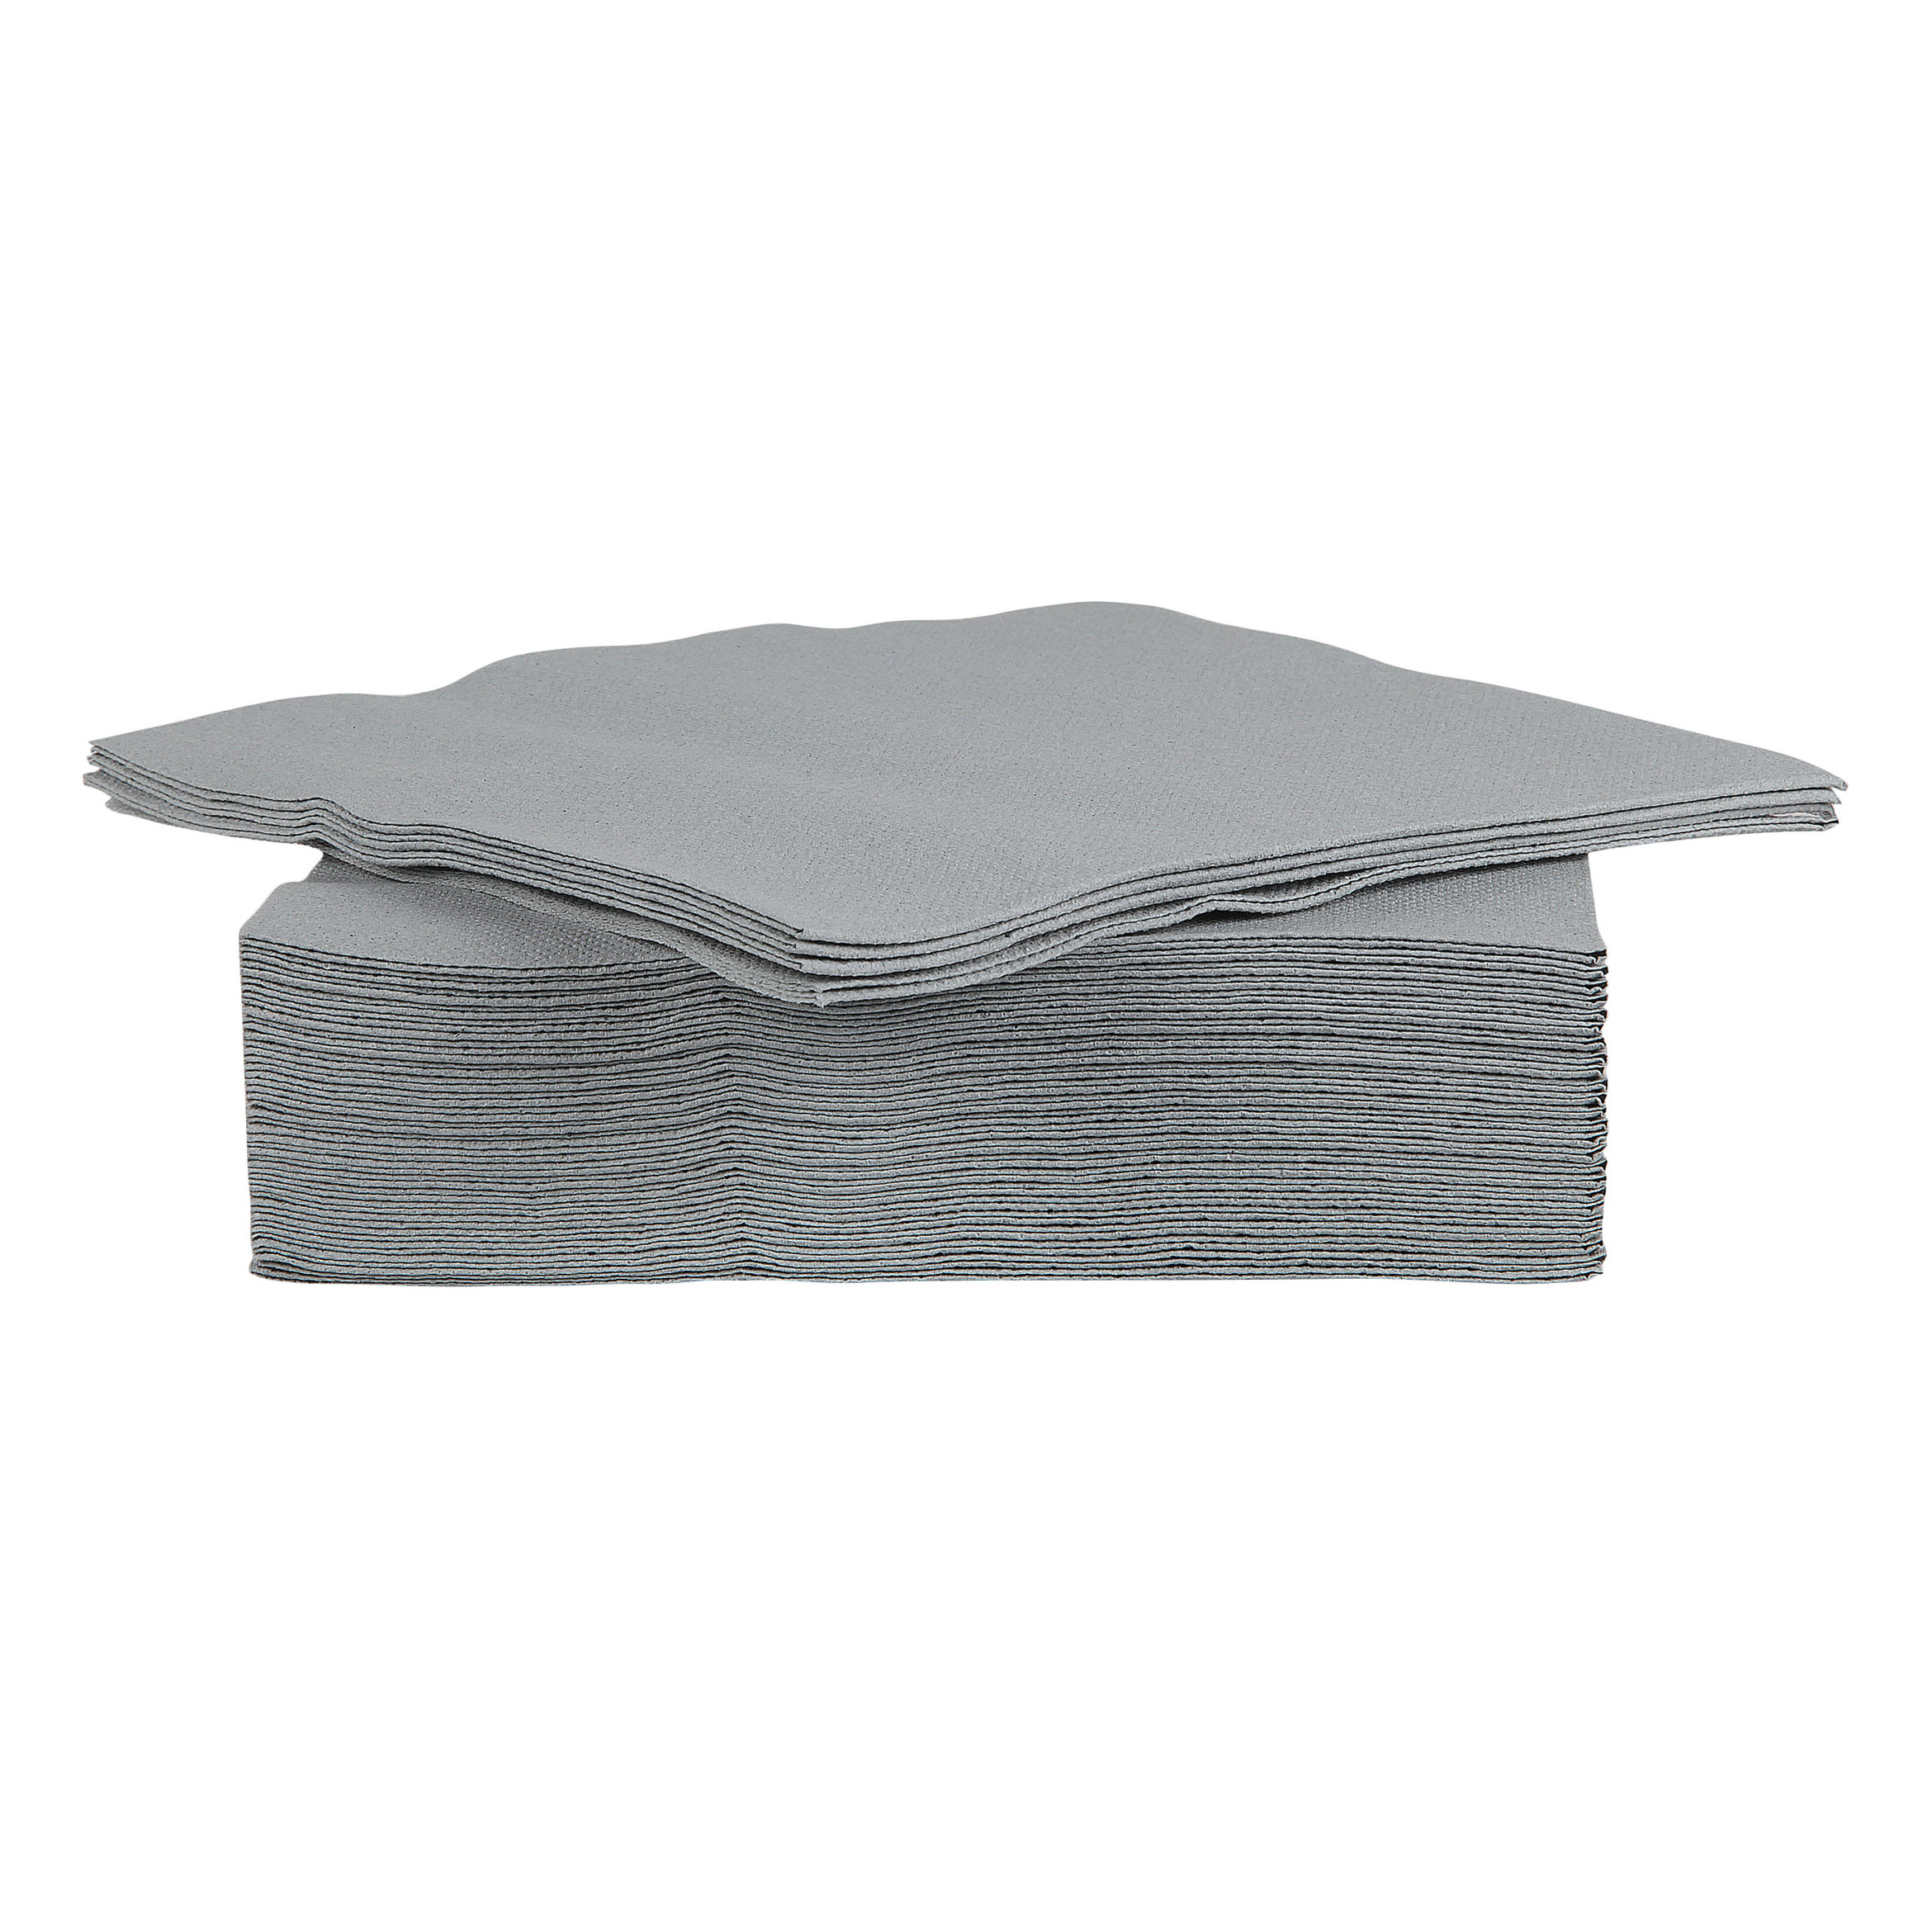 40x stuks luxe kwaliteit servetten grijs 38 x 38 cm